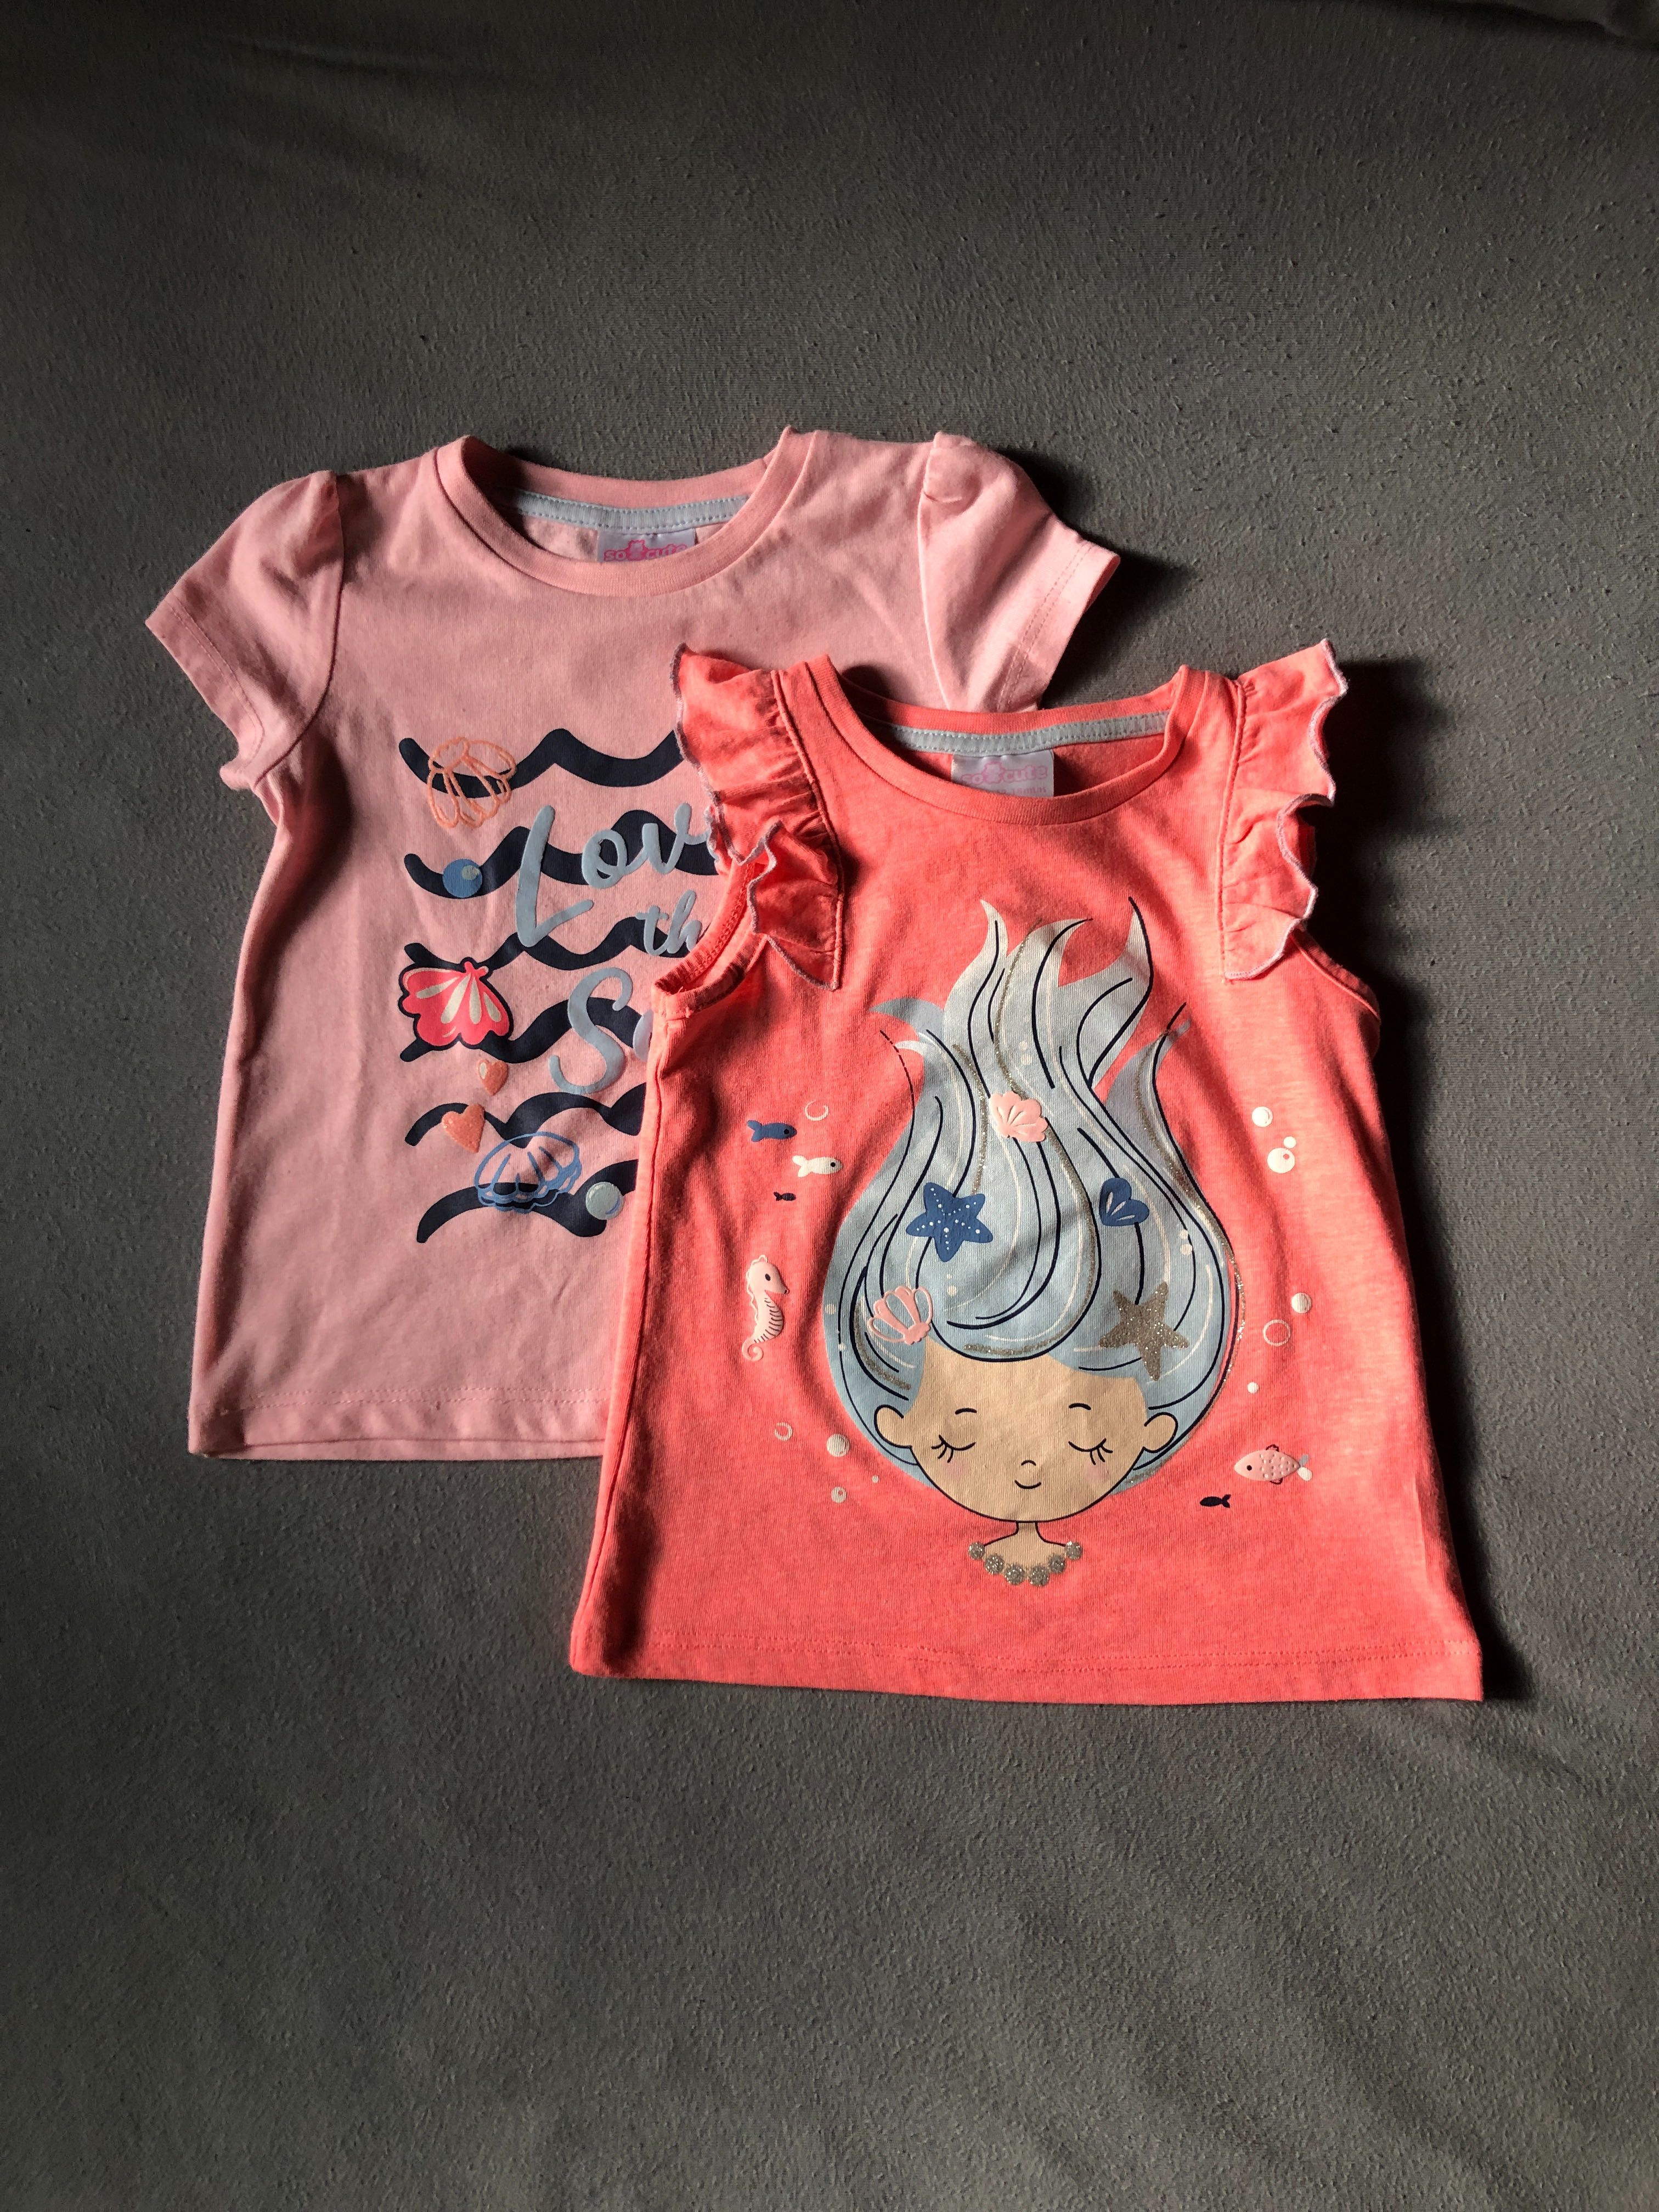 Dwupak t-shirtów dla dziewczynki, rozmiar 86, Pepco